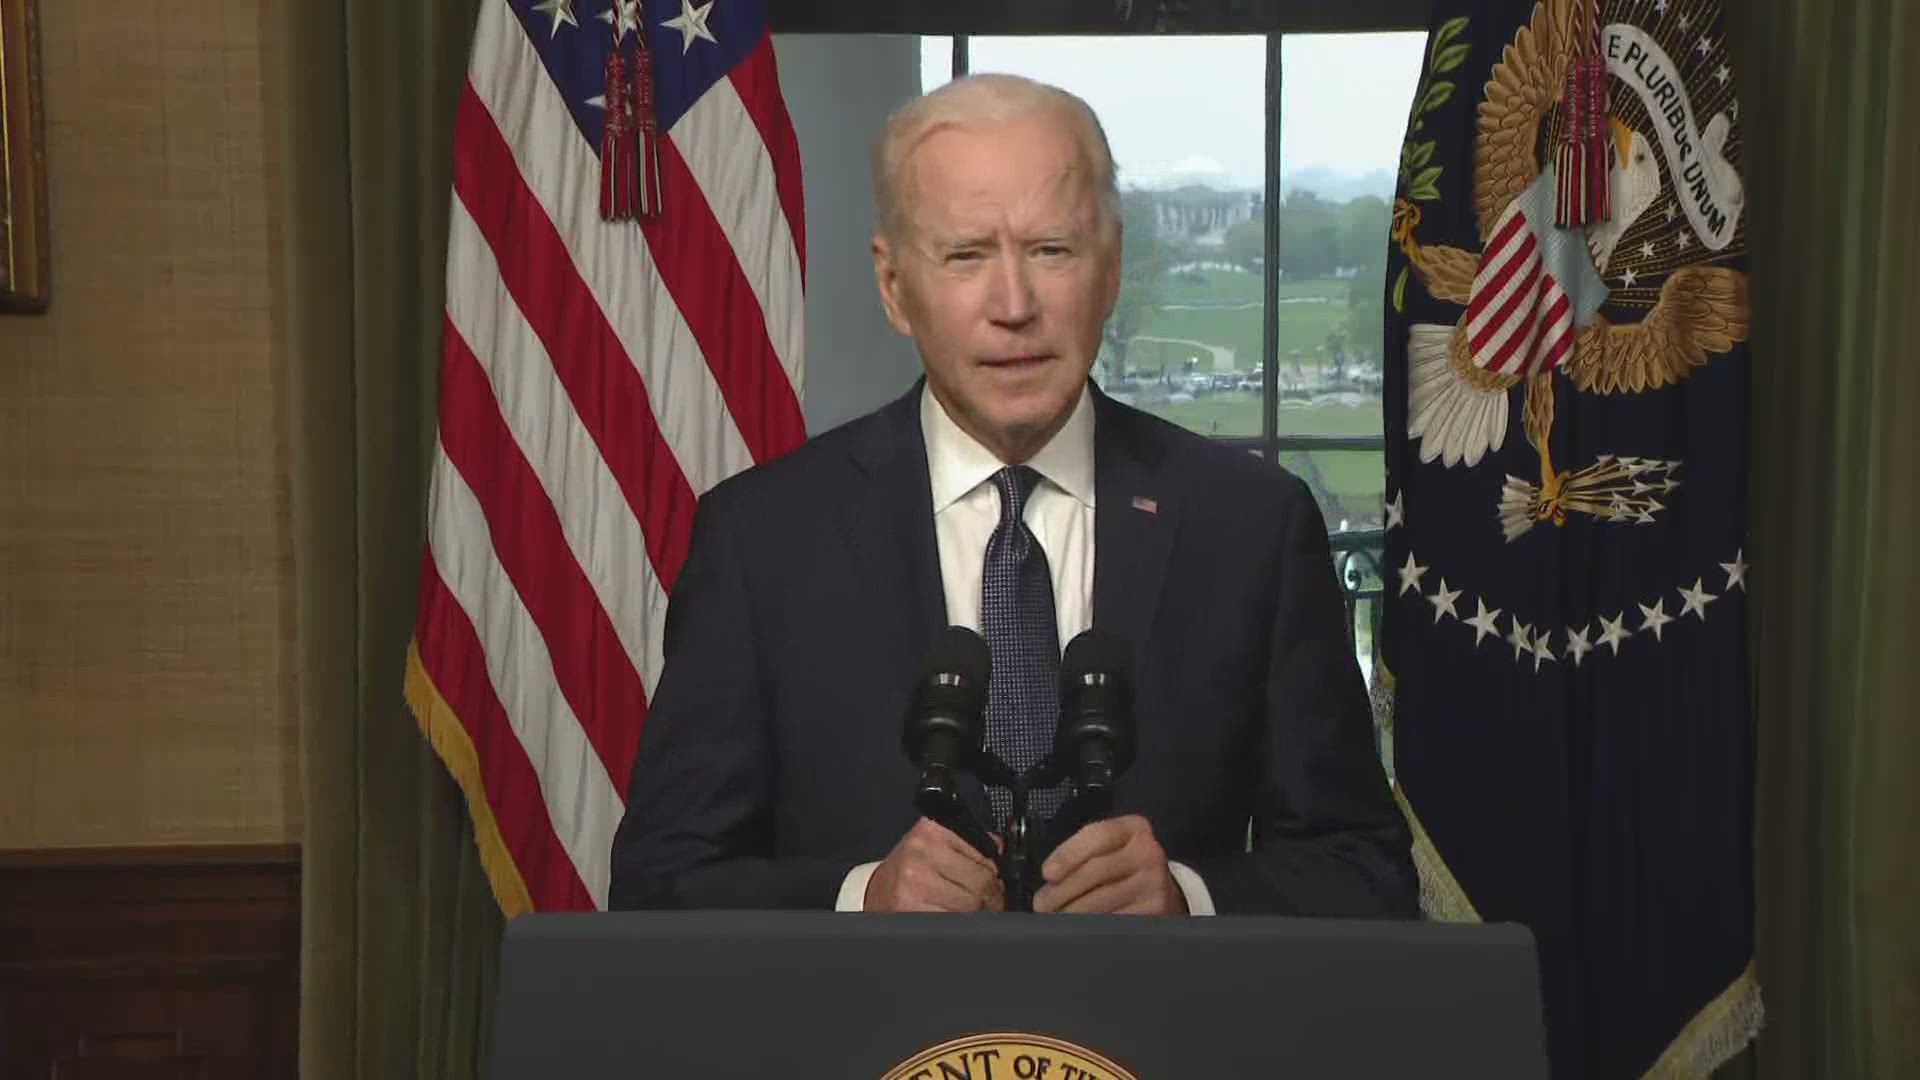 President Biden is set to begin the final Afghanistan troop withdrawal on May 1st, ending "America's longest war."